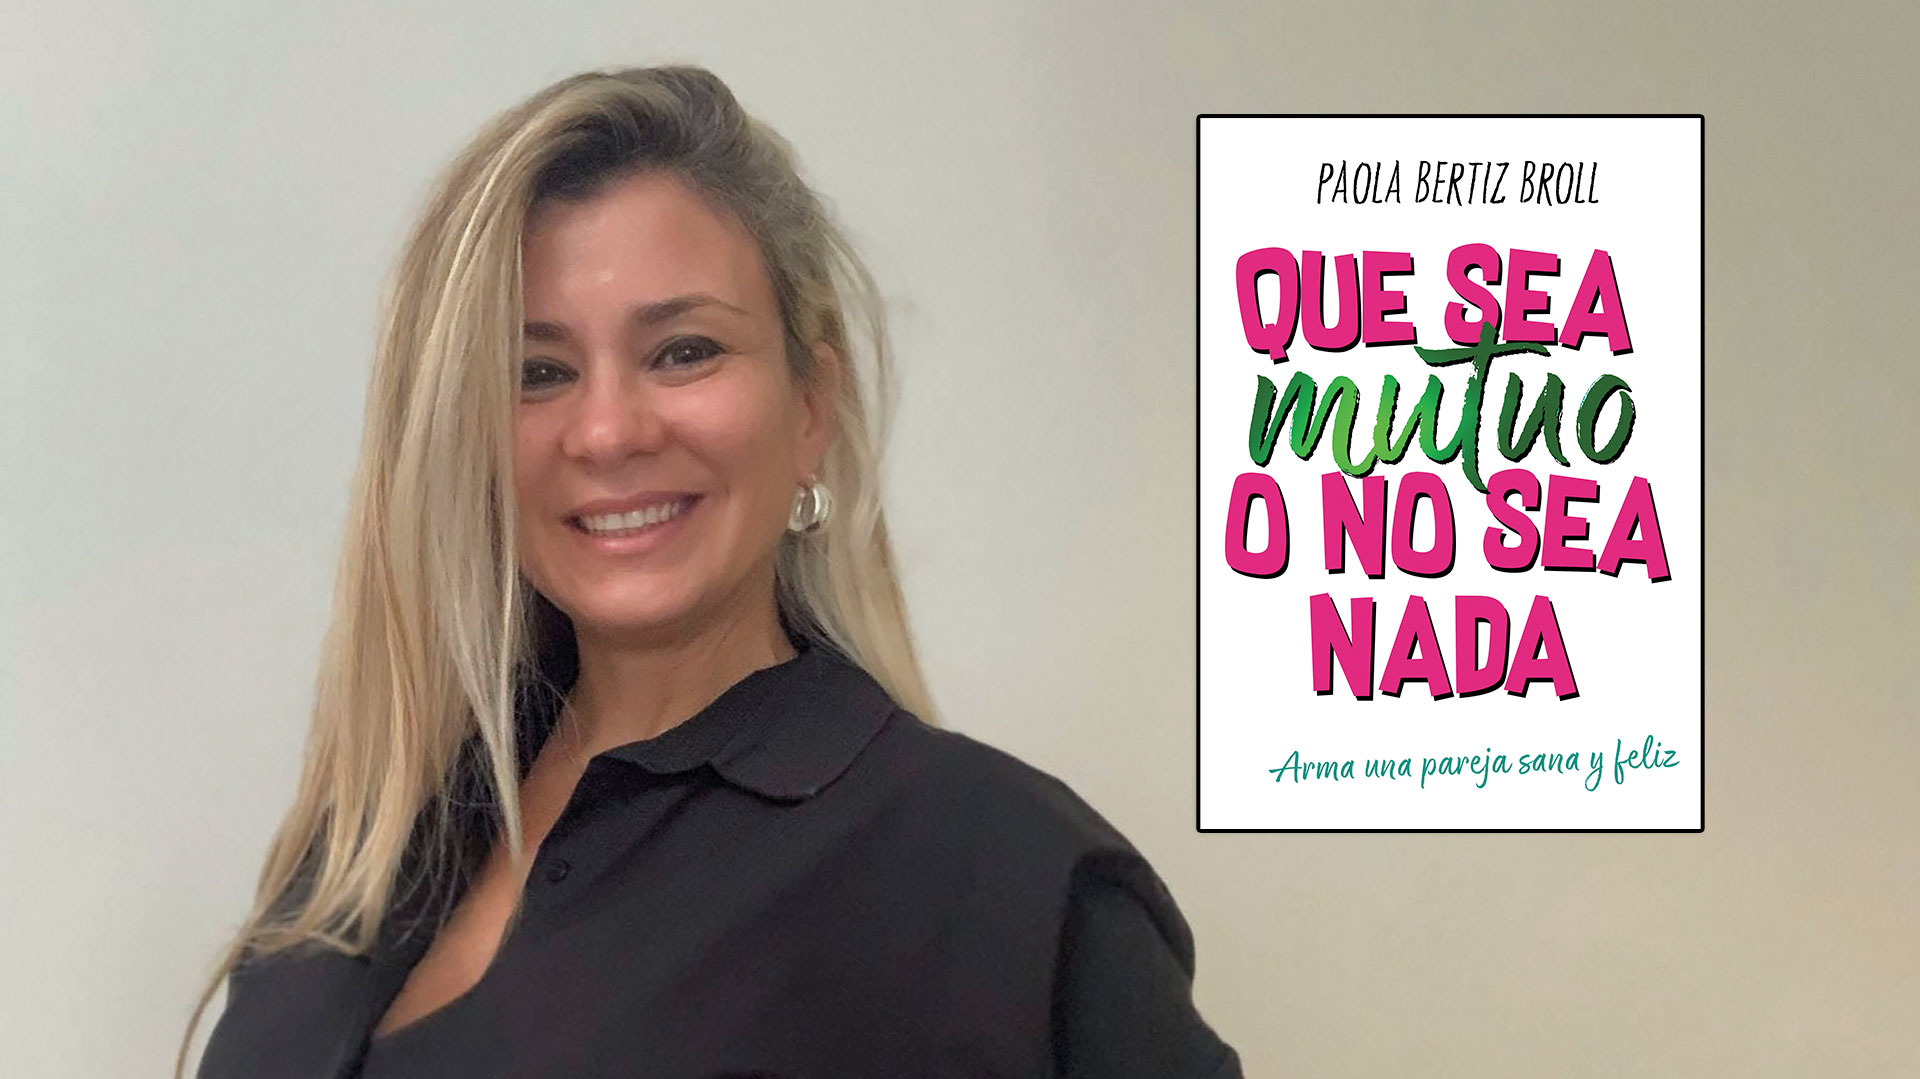 La psicóloga e influencer Paola Bertiz Broll plantea ejercicios y herramientas para reflexionar sobre el amor sano y alejar las relaciones tóxicas.